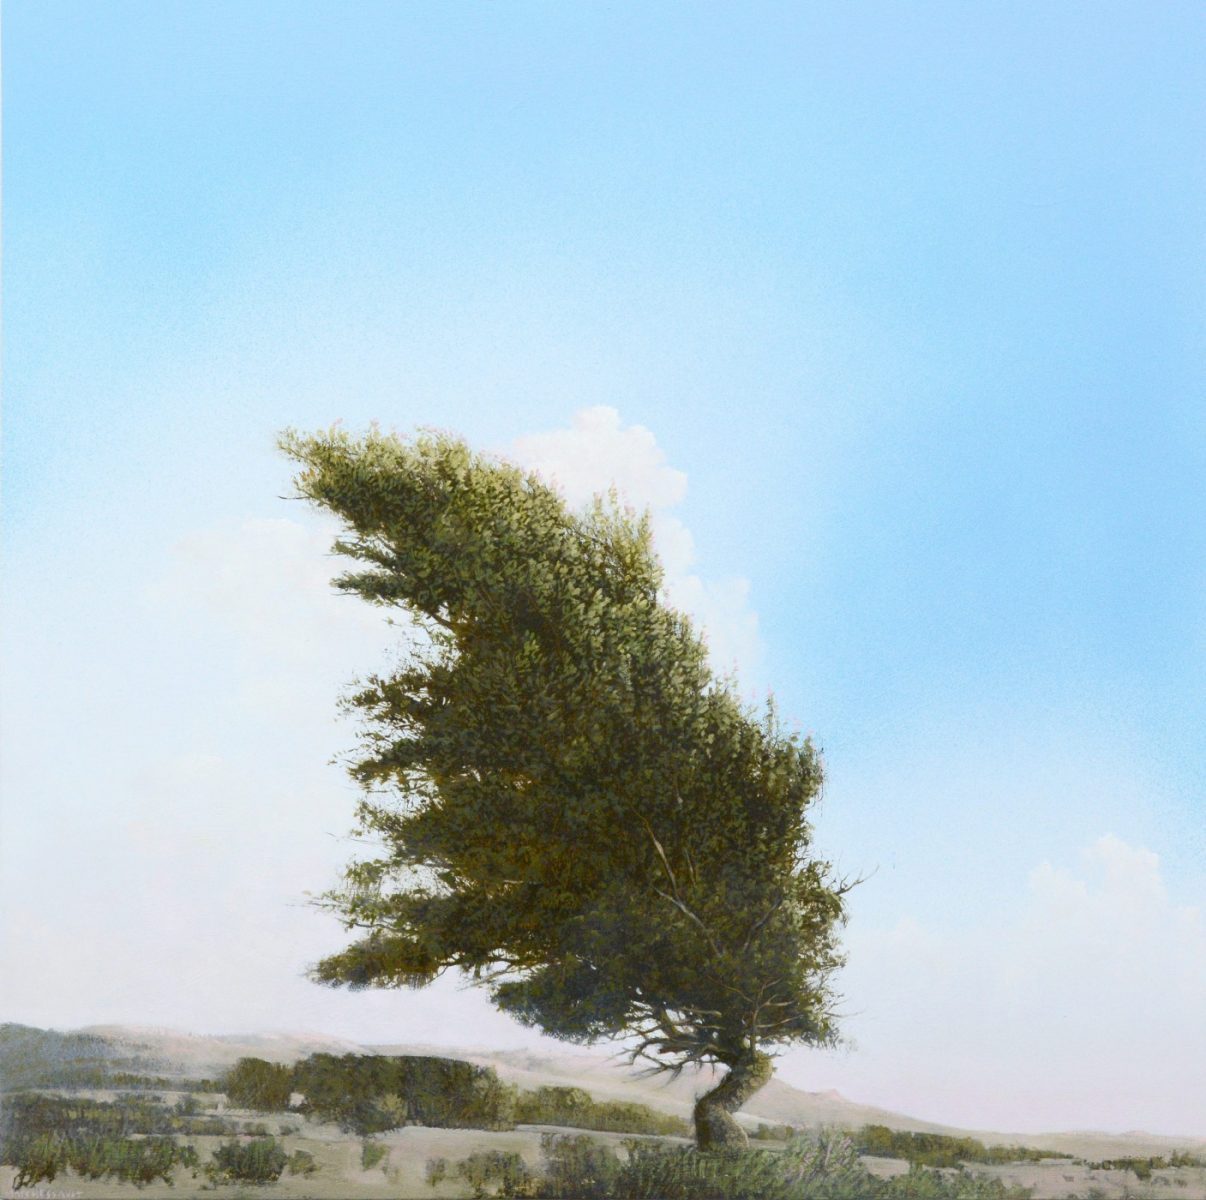 Seven Bird Tree by Robert Marchessault